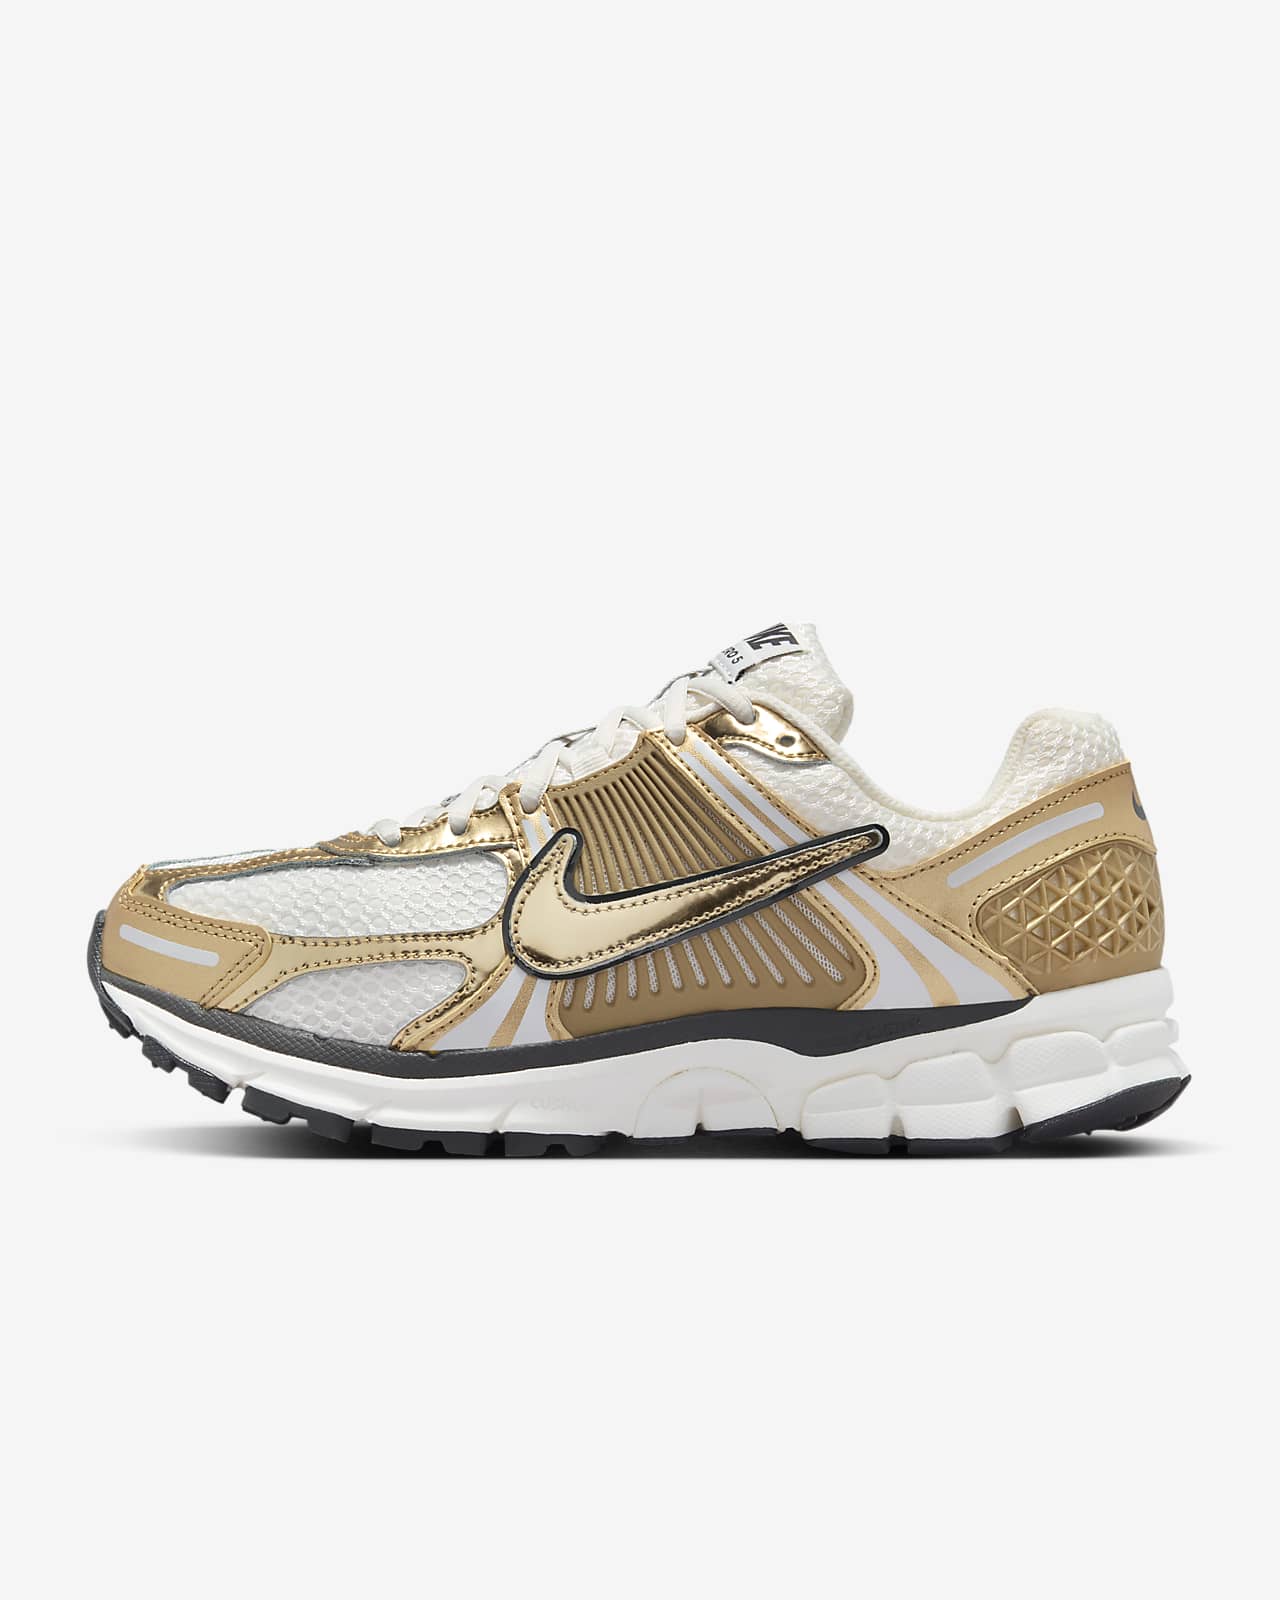 Γυναικεία παπούτσια Nike Zoom Vomero 5 Gold